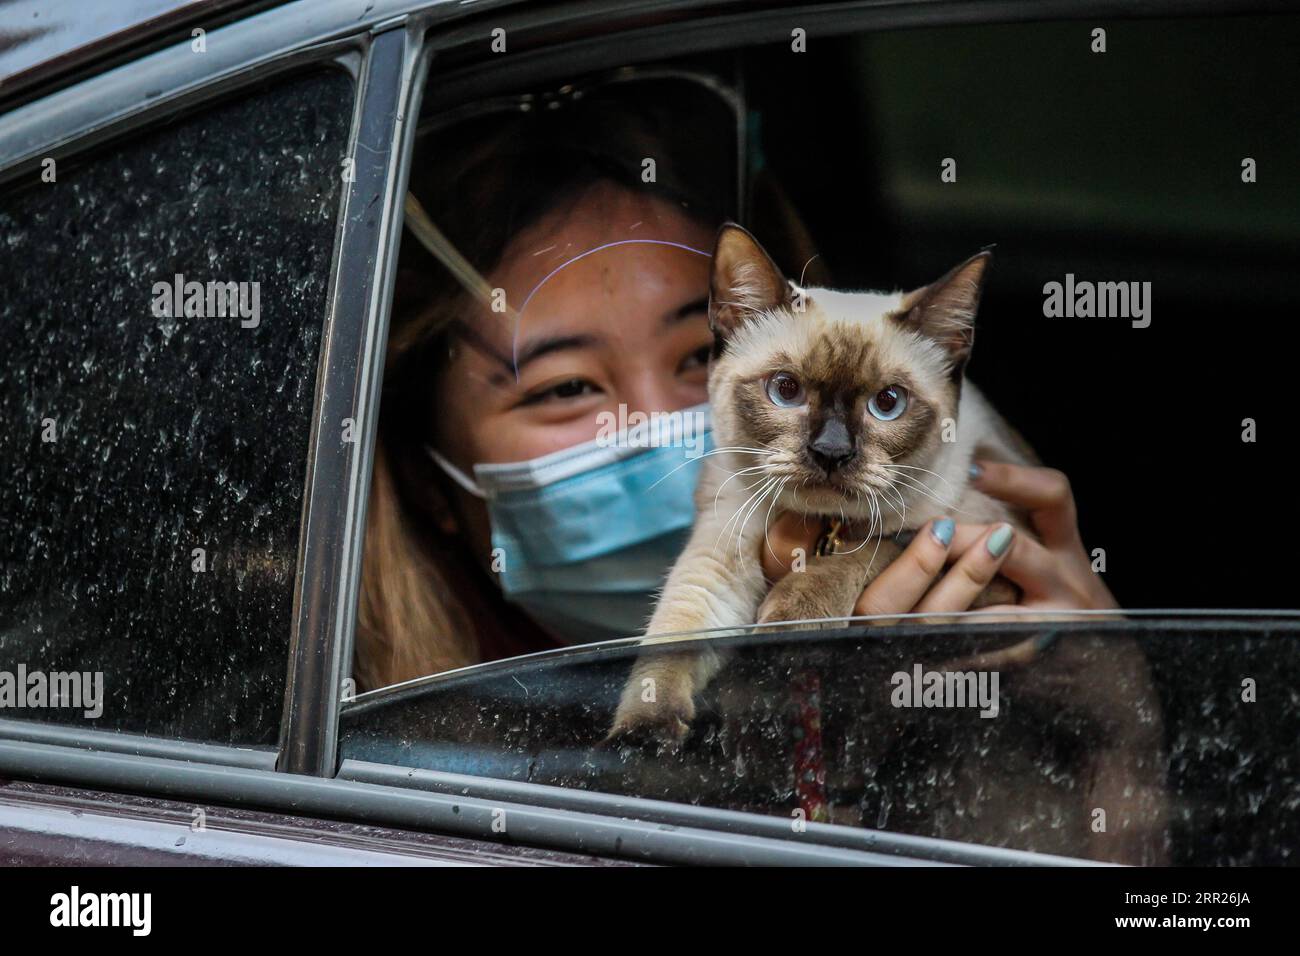 201004 -- MANILA, 4 ottobre 2020 -- Un gatto domestico è visto all'interno di un'auto durante una benedizione di un animale domestico a Manila, nelle Filippine, il 4 ottobre 2020. La benedizione degli animali domestici drive-thru si svolge in mezzo alla pandemia di COVID-19 per celebrare la giornata mondiale degli animali che si celebra ogni anno il 4 ottobre. FILIPPINE-MANILA-WORLD ANIMAL-DRIVE-THRU PET BLESSING ROUELLEXUMALI PUBLICATIONXNOTXINXCHN Foto Stock